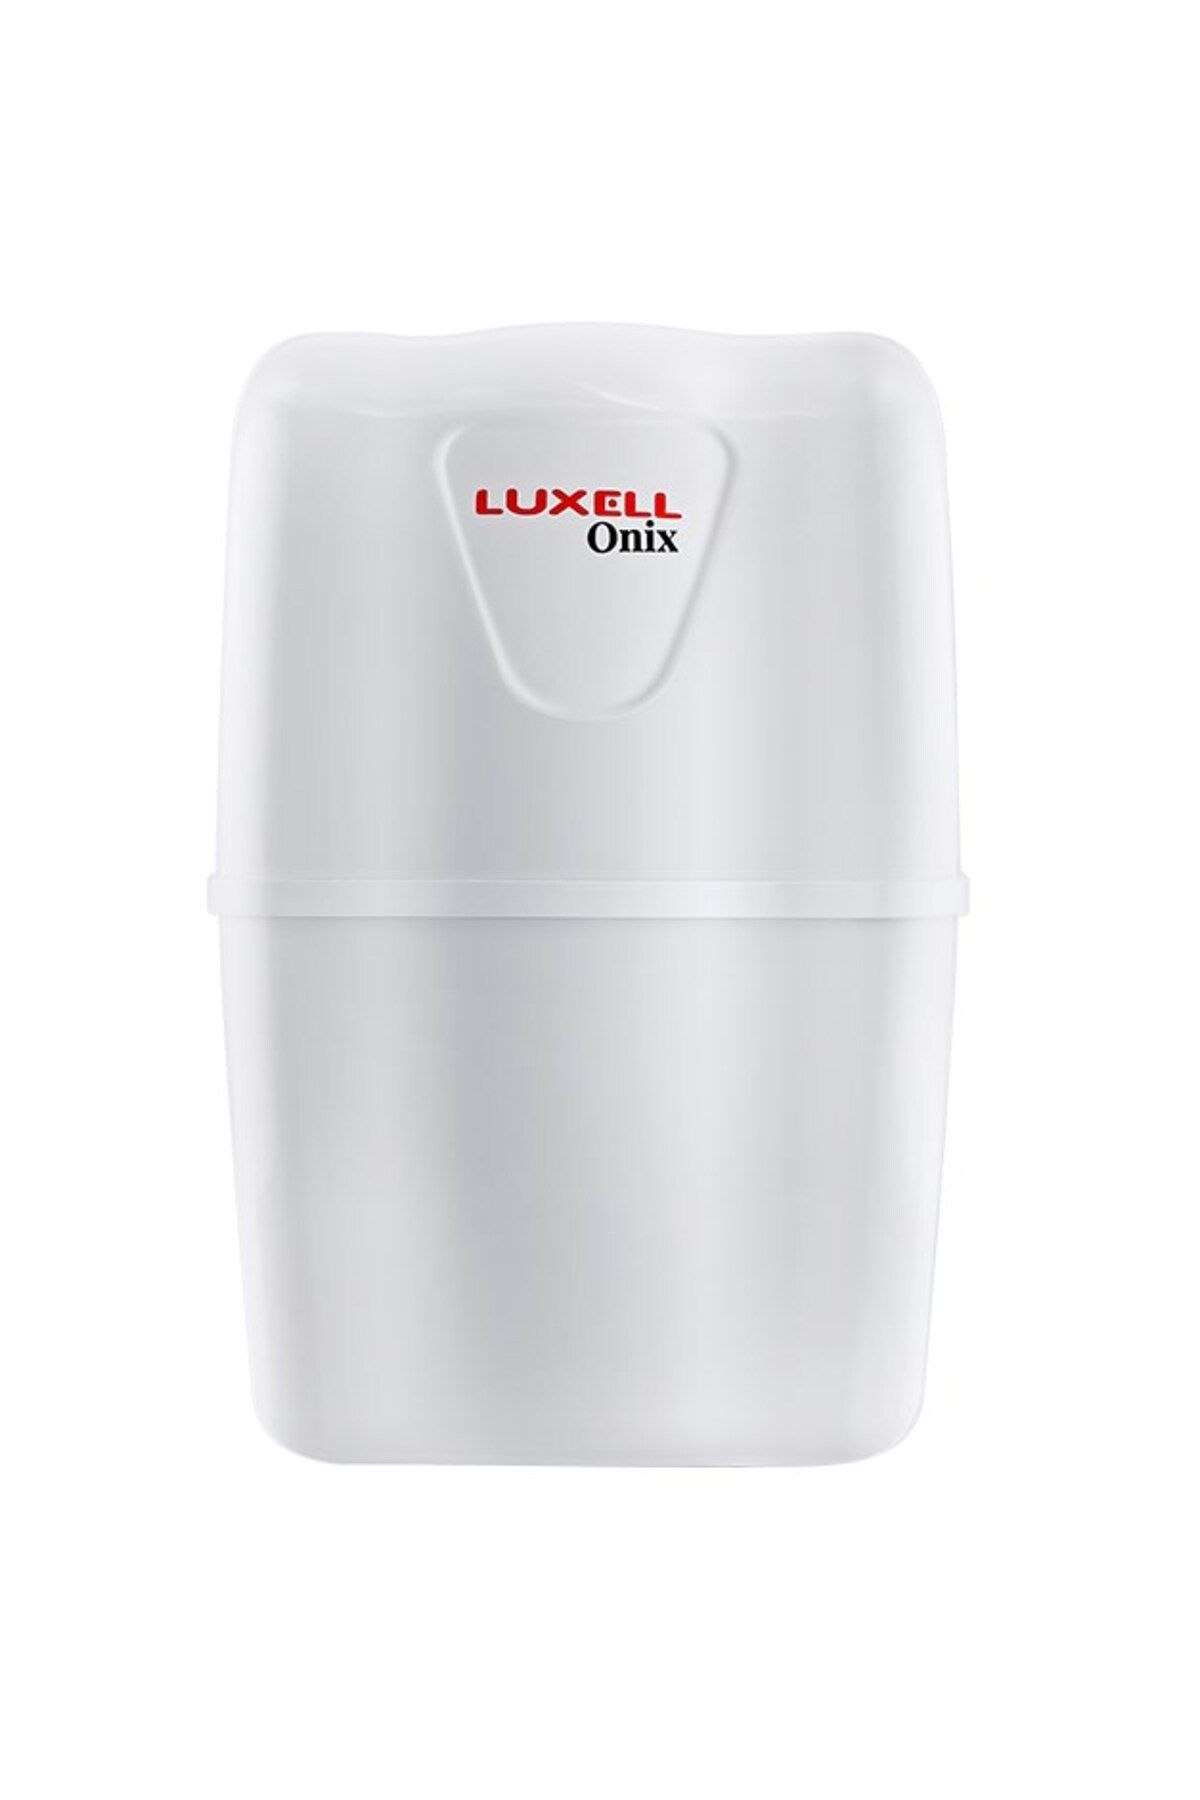 Luxell Lxs-p0 Onix Su Arıtma Sistemi Pompasız